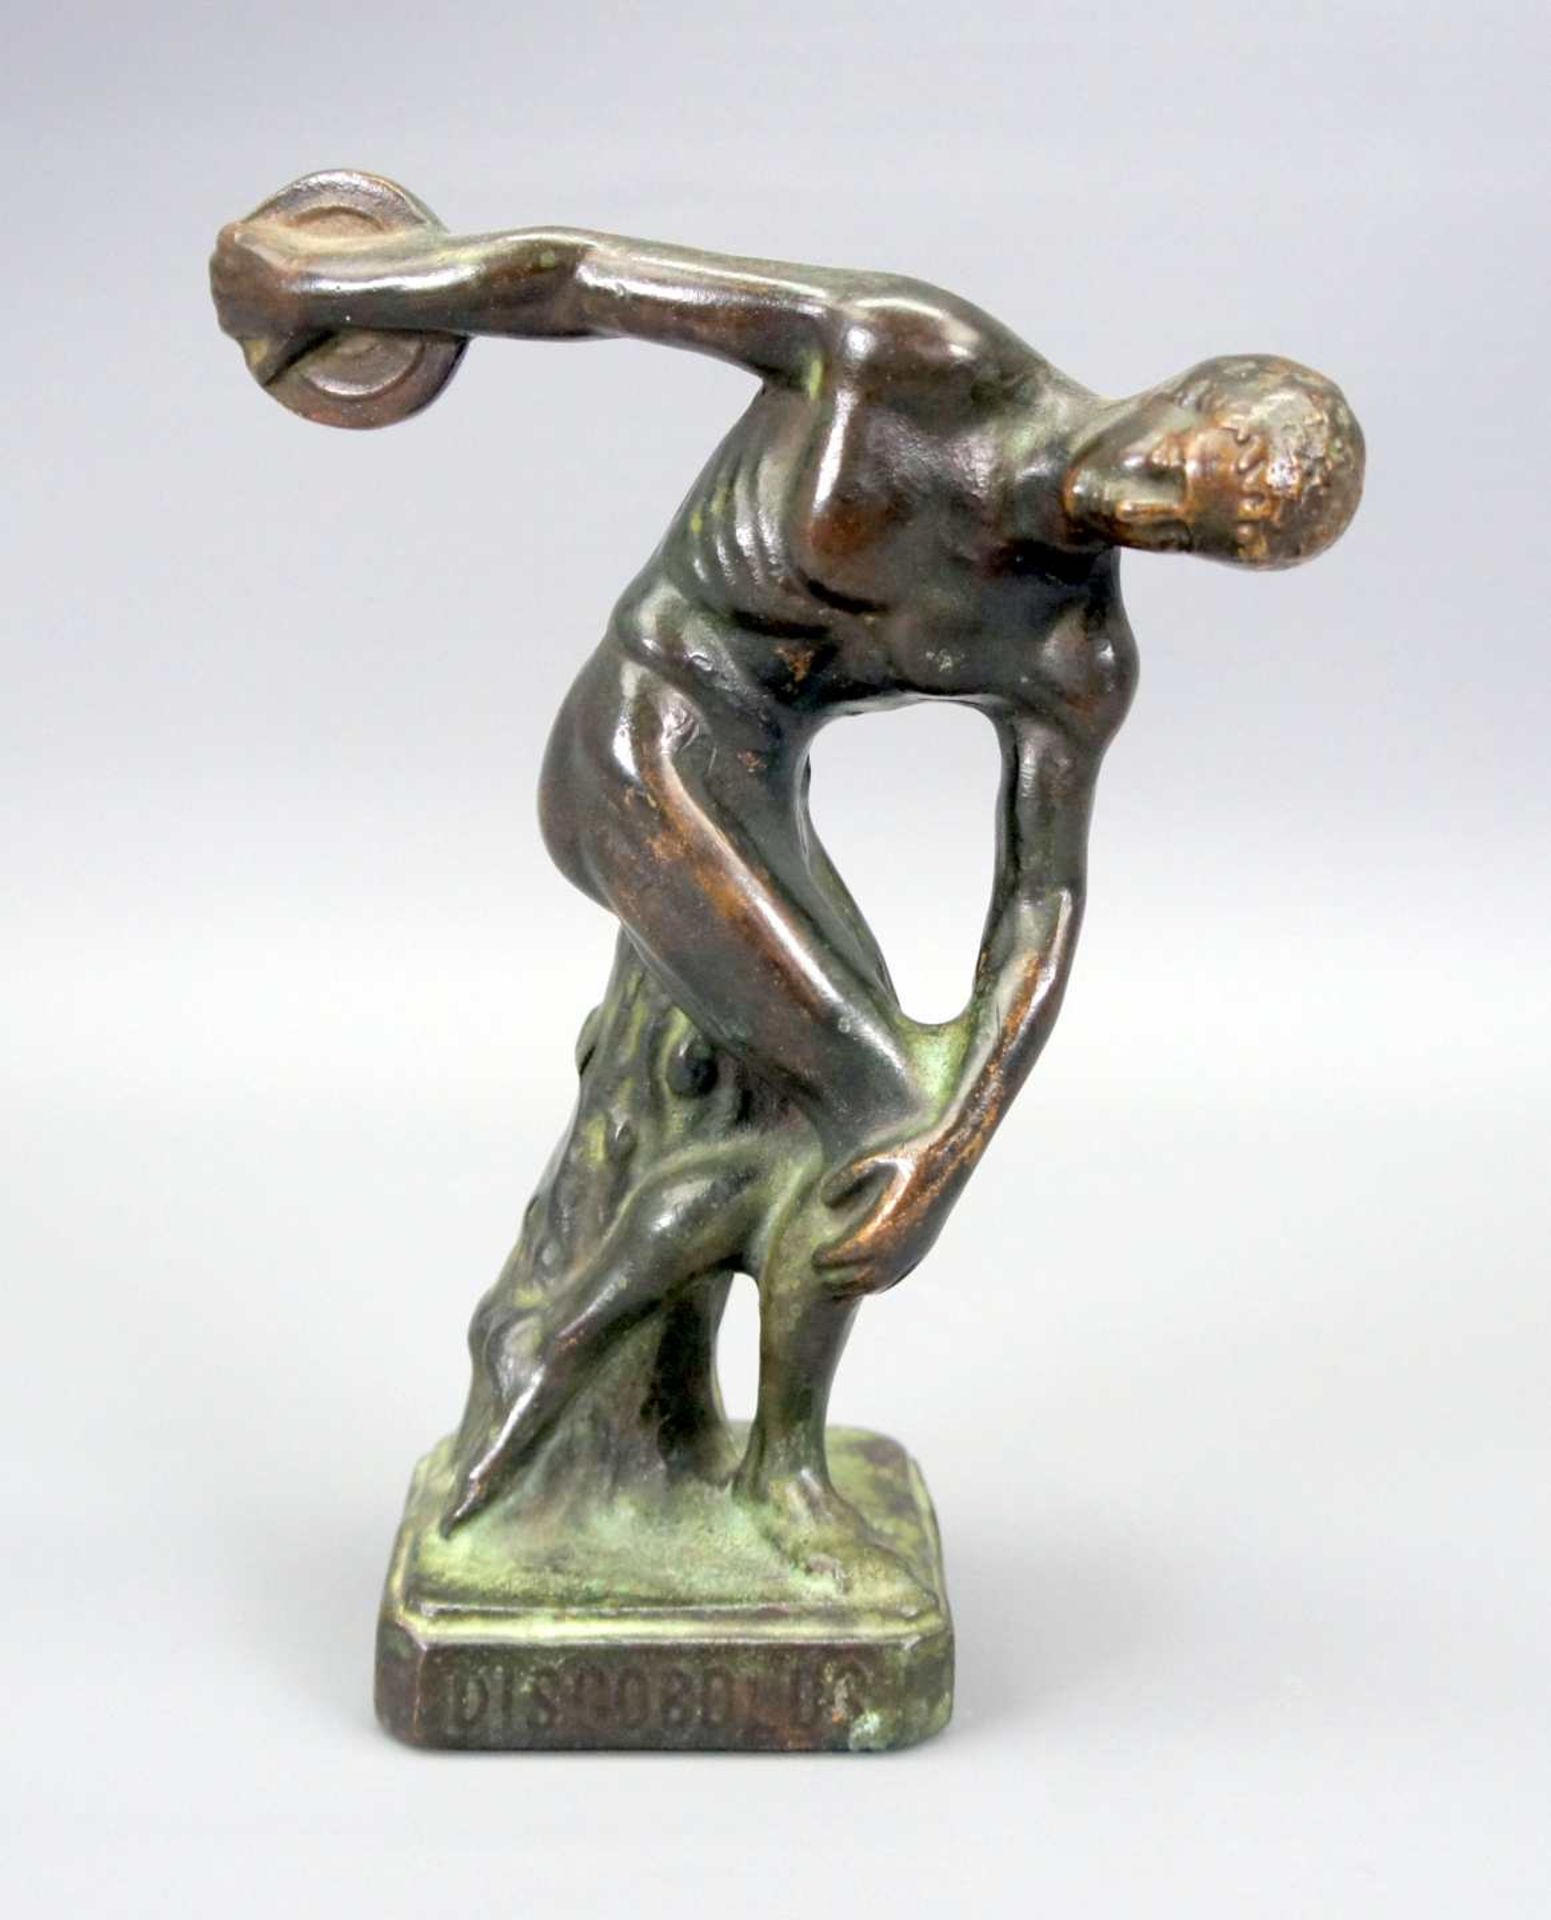 Diskobolos Bronze, goldbraun und grün patiniert. Nackter Athlet mit Diskus in der Han